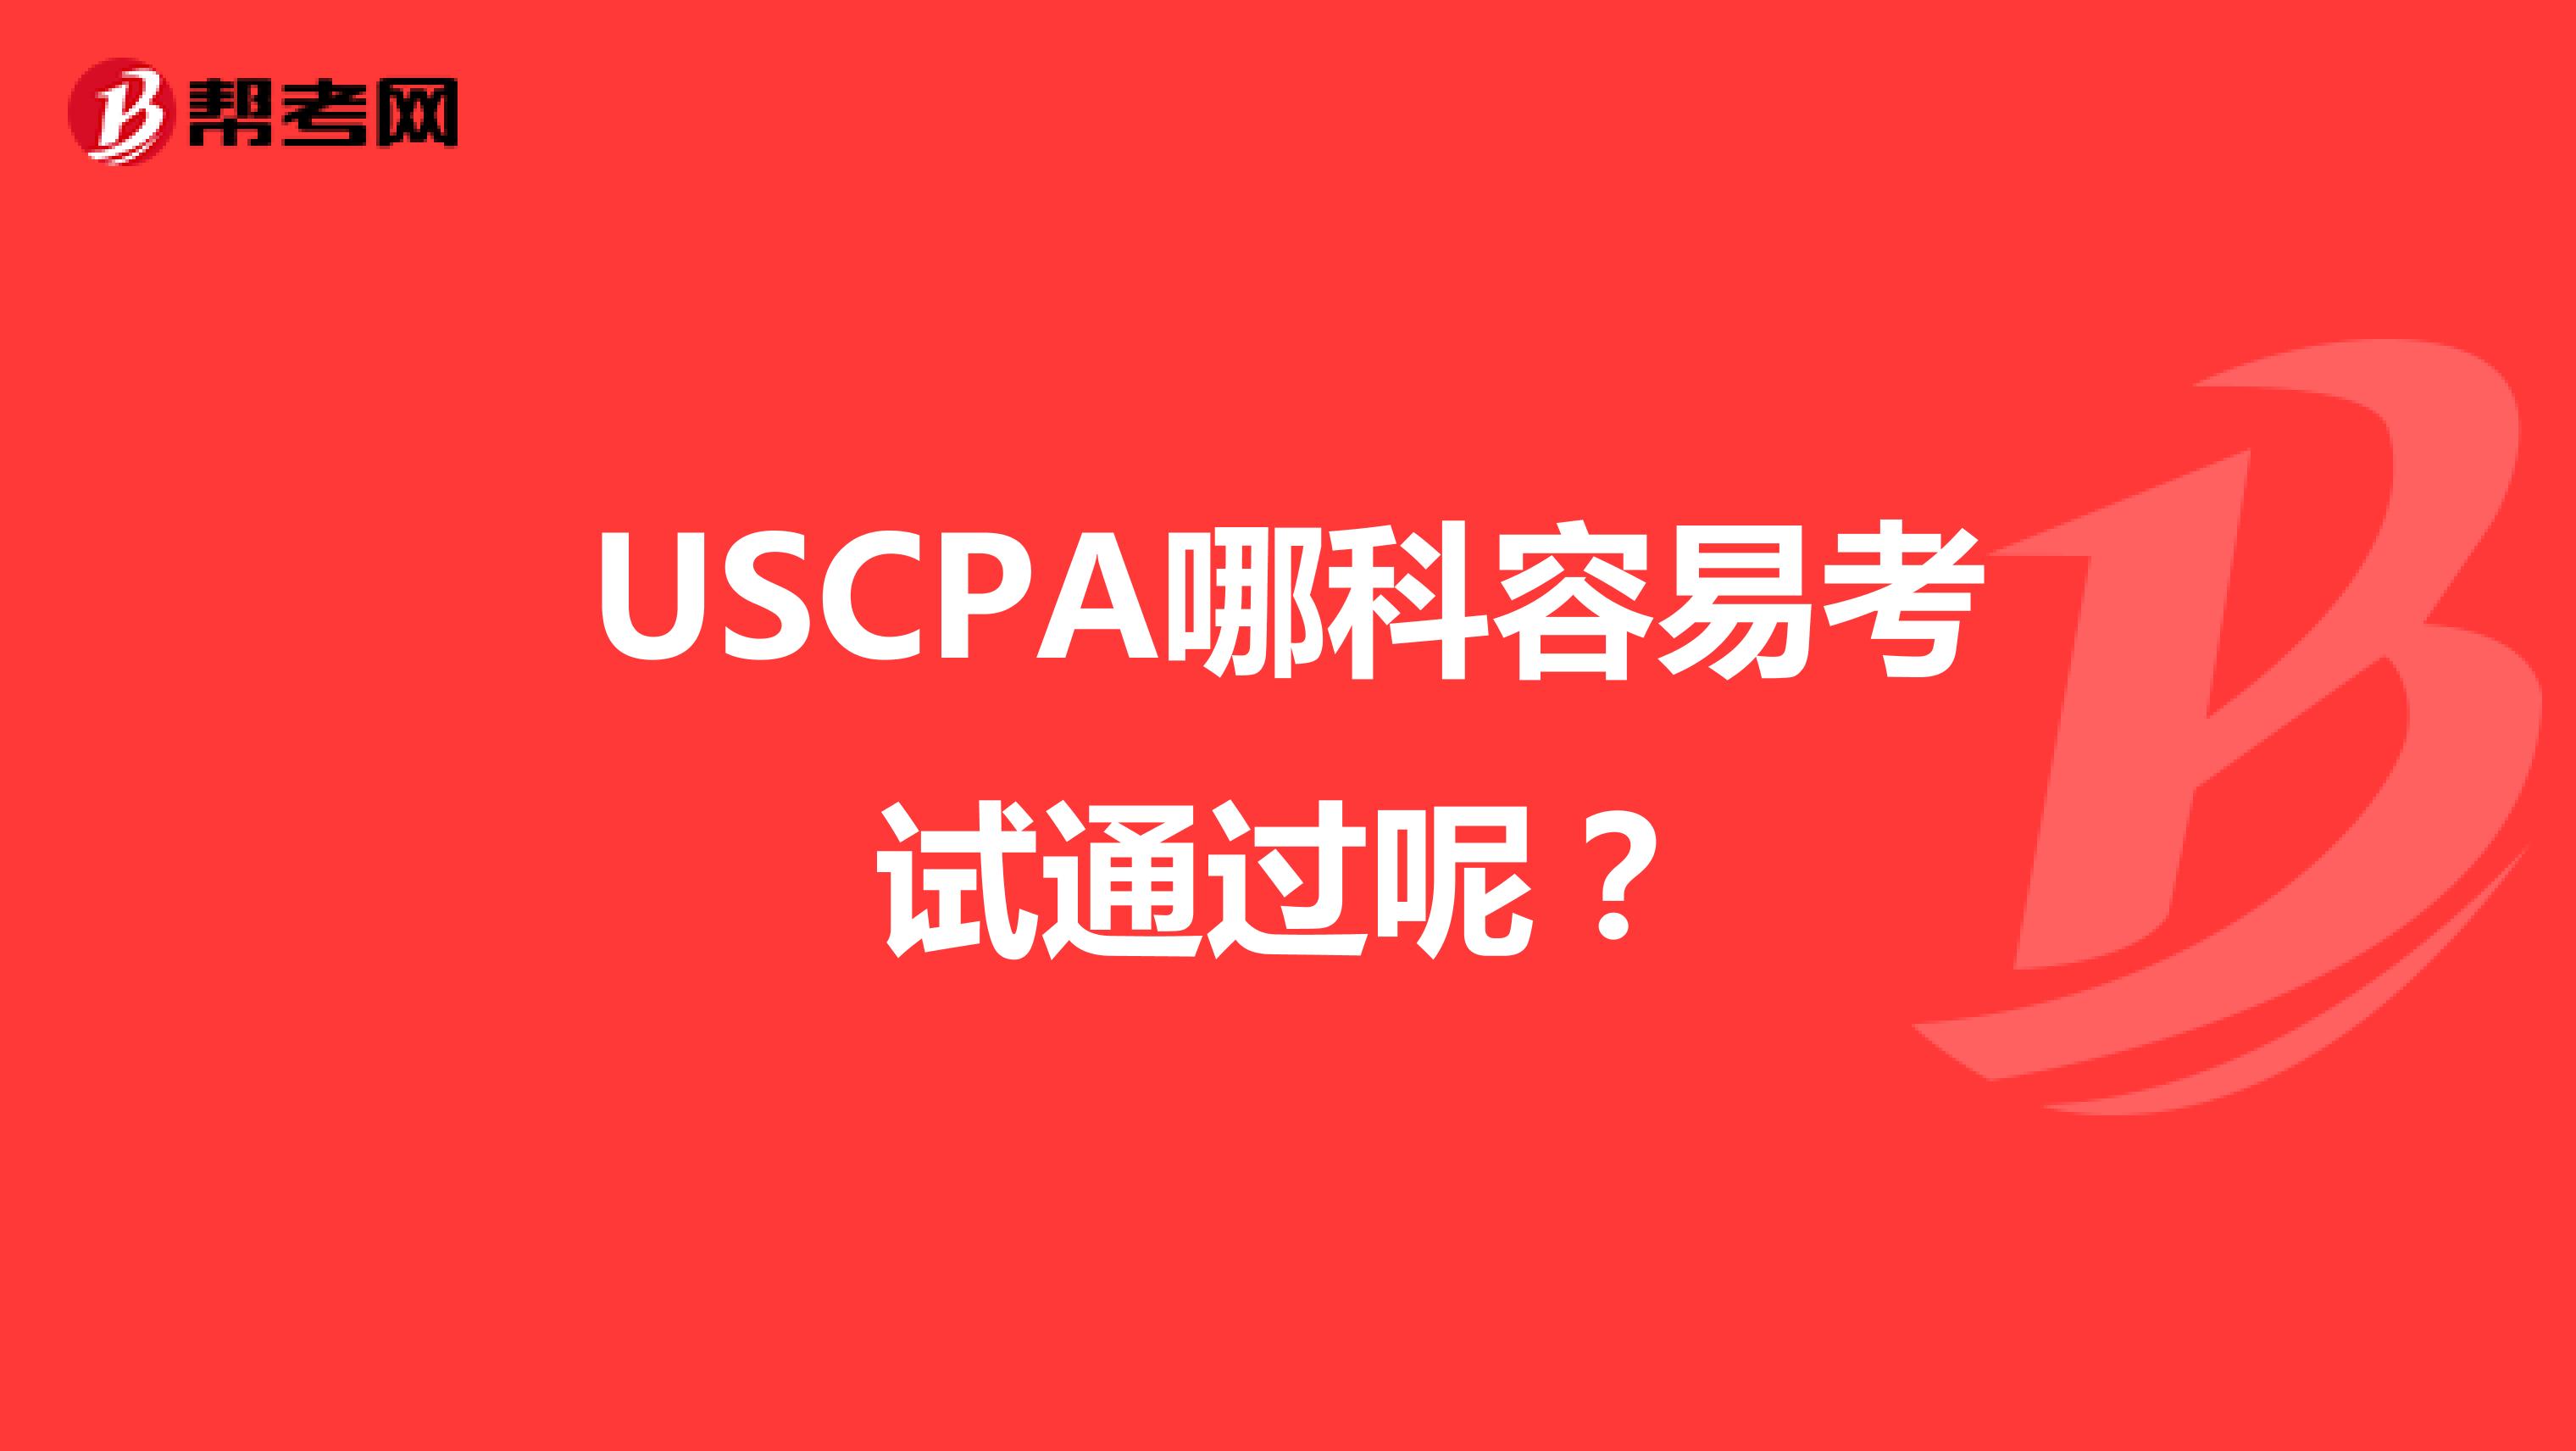 USCPA哪科容易考试通过呢？